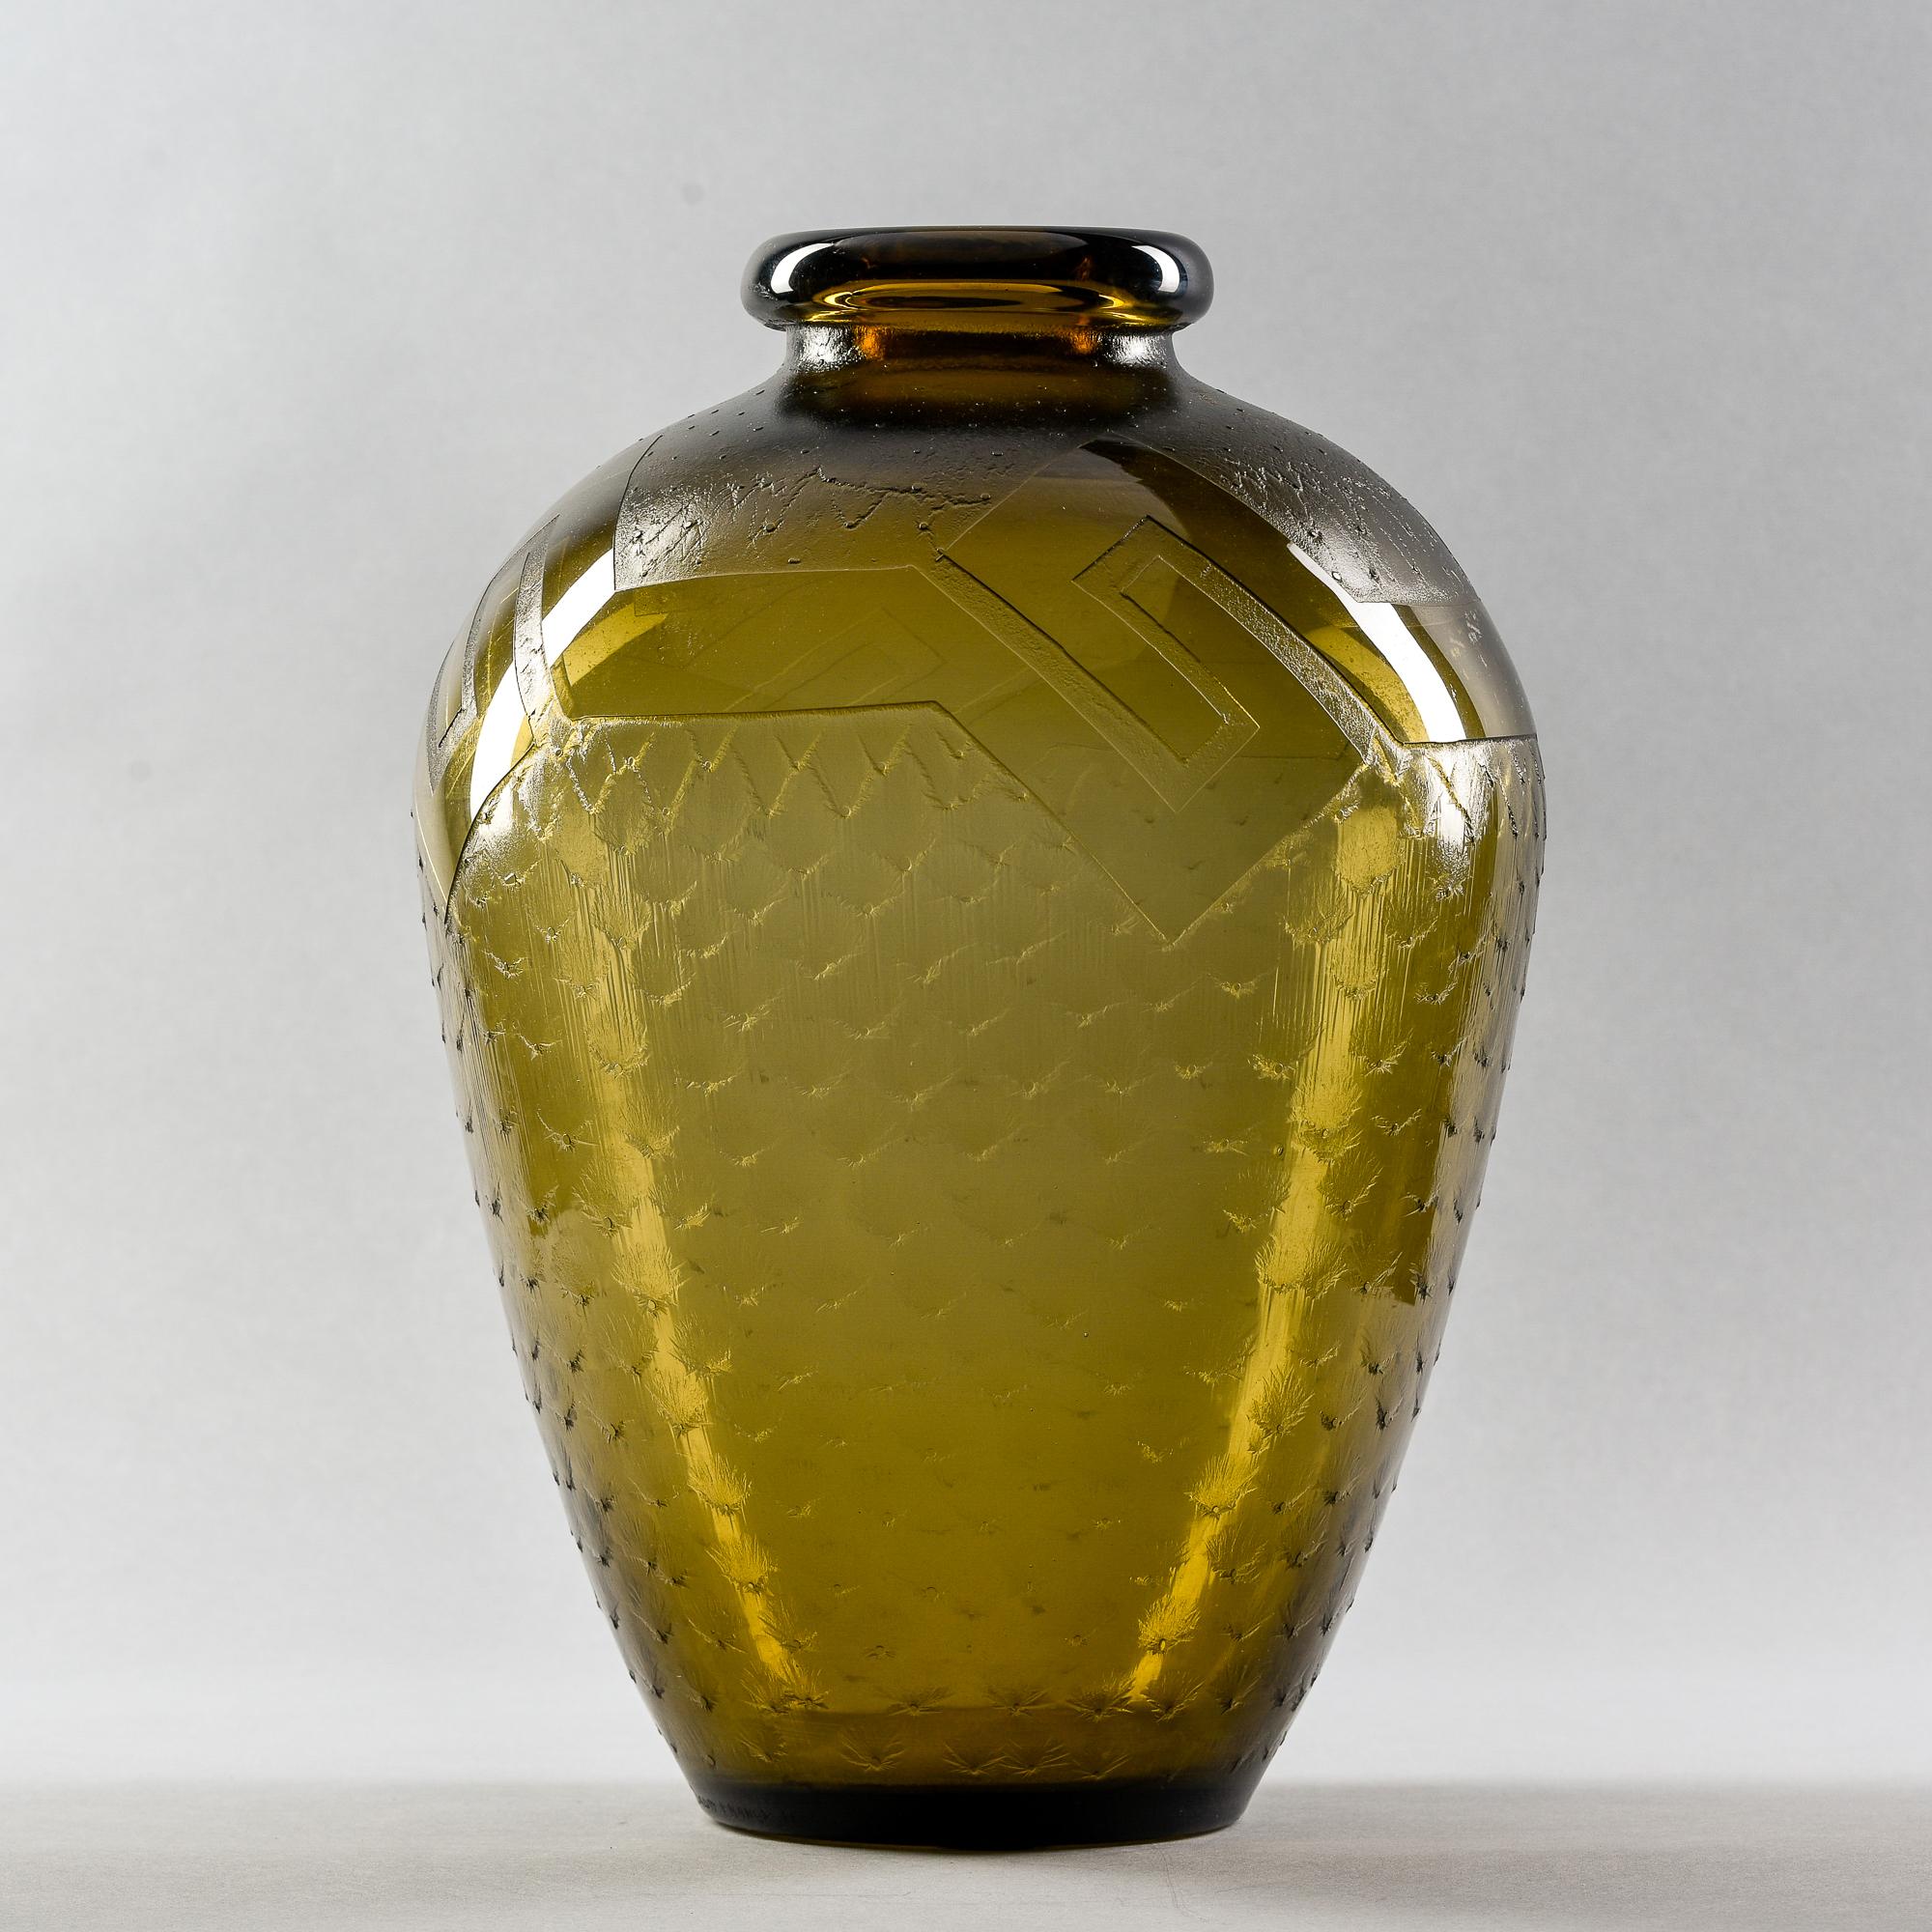 Vase en verre taupe des années 1930, signé Daum, avec motif géométrique gravé à l'acide. Signature gravée sur le bord de la base. Très bon état ancien.
